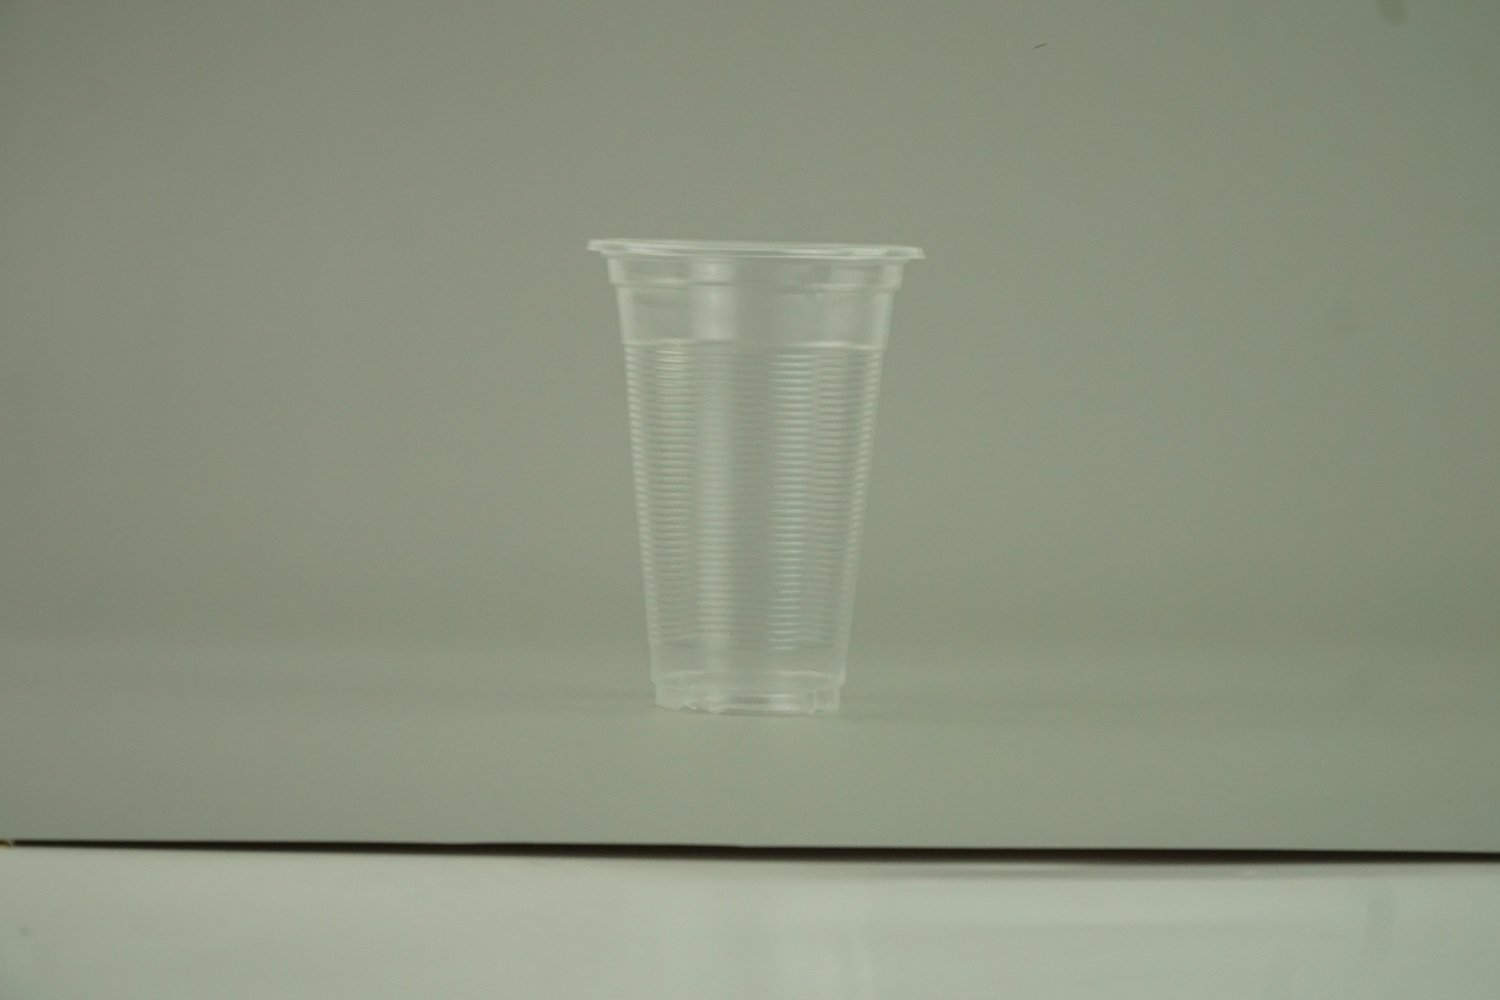 แก้วน้ำ 12 ออนซ์ แก้วพลาสติก PP ลอนใส รุ่นประหยัด ขนาด 8.5x11.3x4.7 cm.